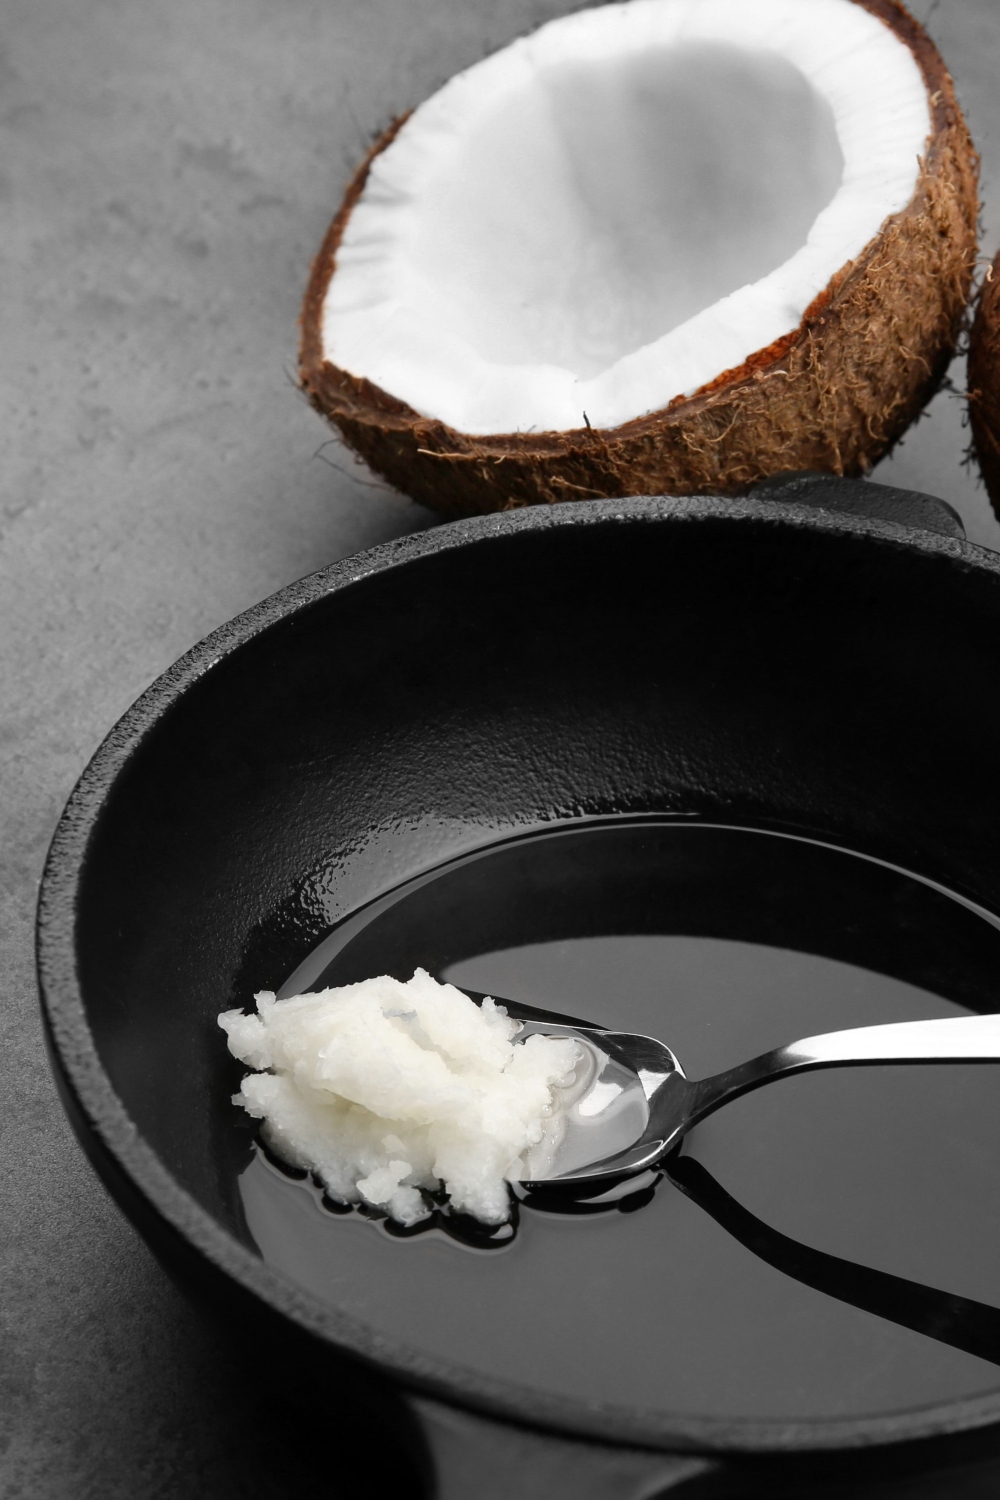 coconut oil in pan